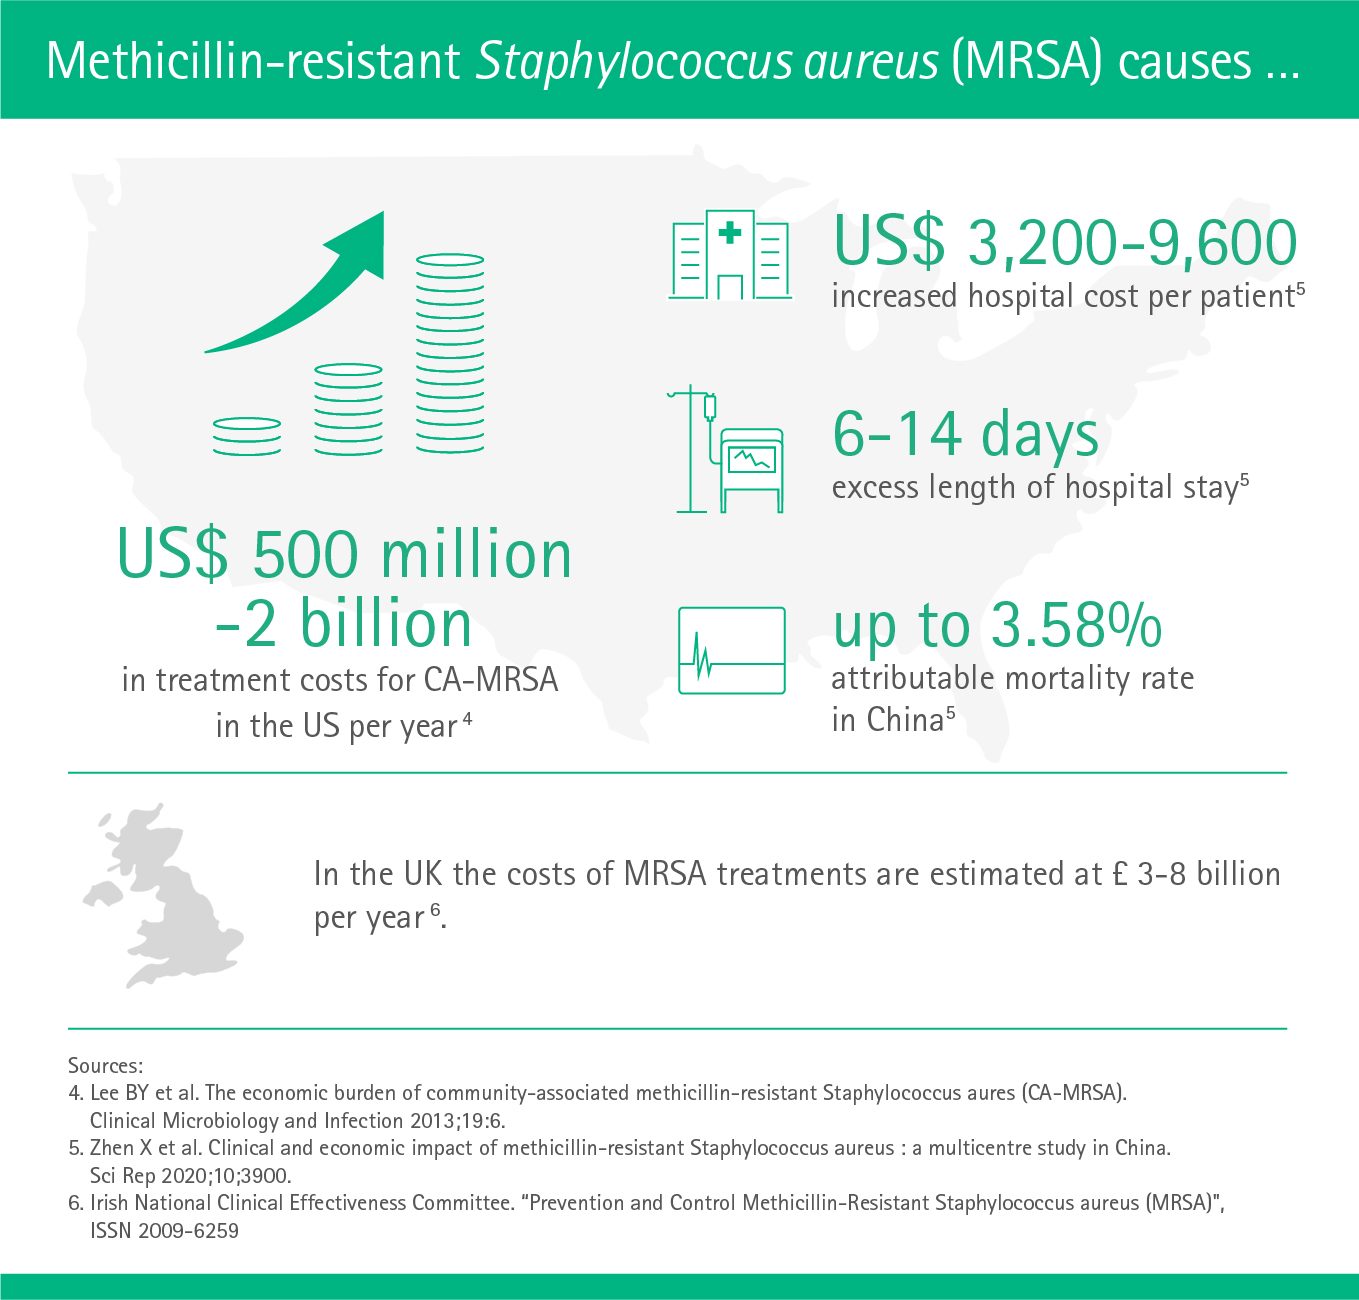 Methicillin-resistant Staphylococcus aureus causes